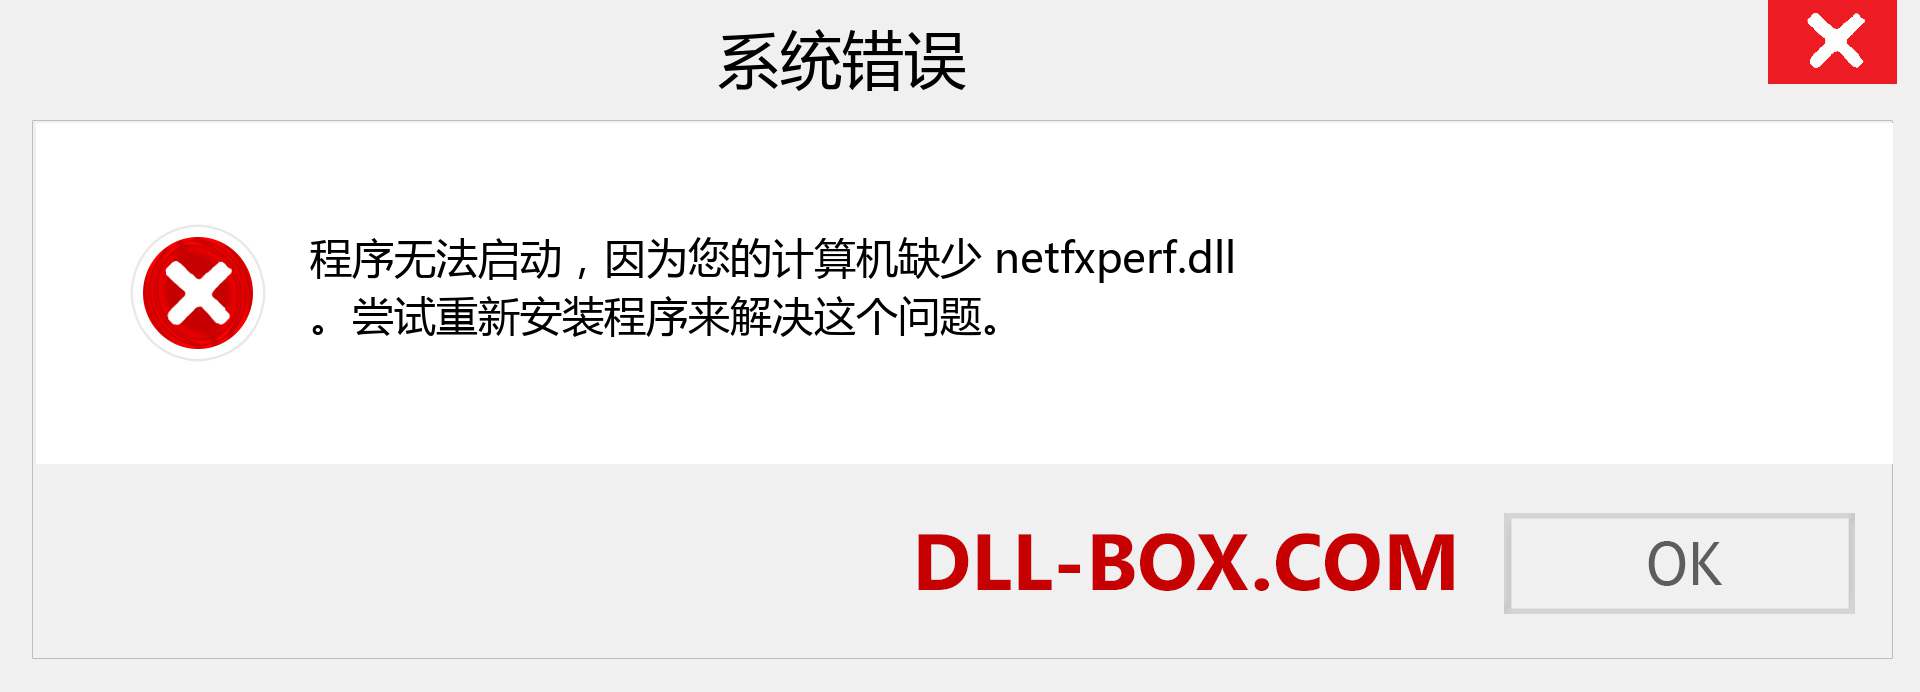 netfxperf.dll 文件丢失？。 适用于 Windows 7、8、10 的下载 - 修复 Windows、照片、图像上的 netfxperf dll 丢失错误